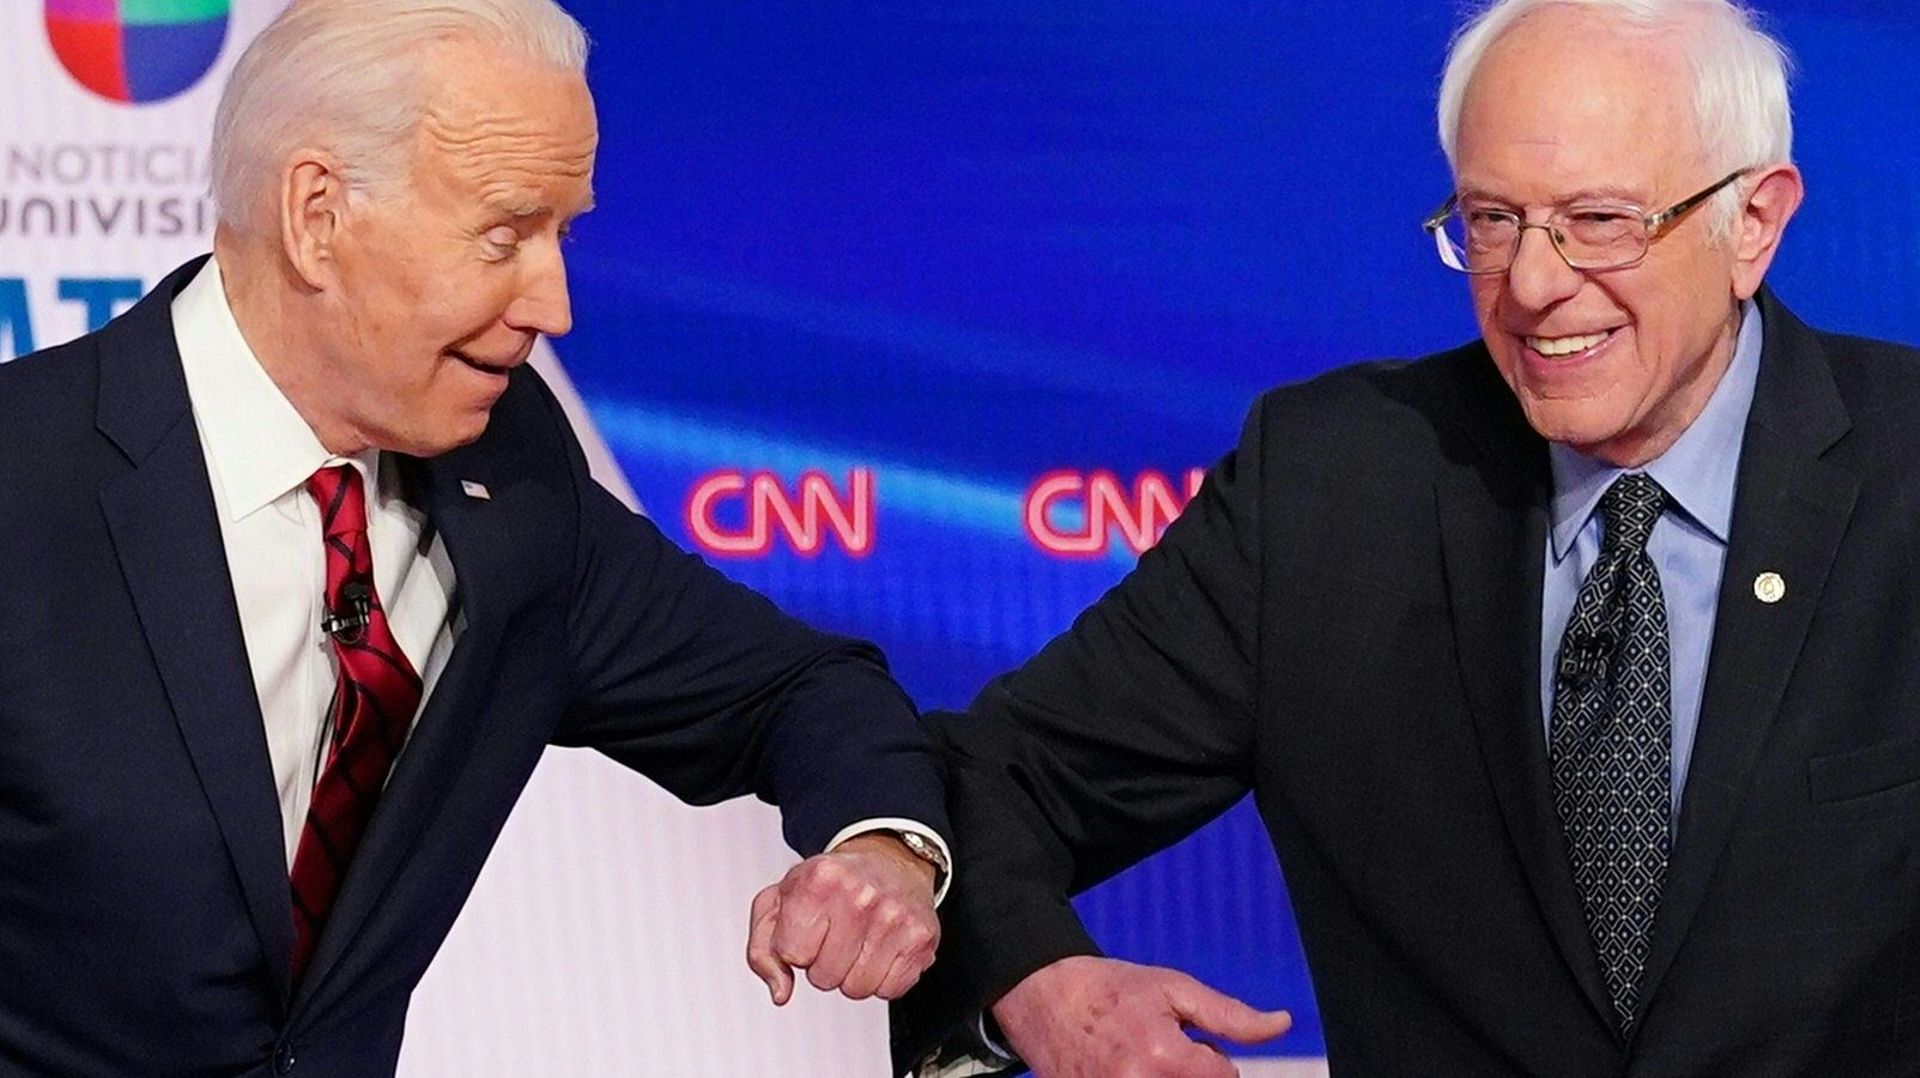 Les candidats démocrates à la présidence, l’ancien vice-président des États-Unis Joe Biden (à gauche) et le sénateur Bernie Sanders, se saluent d’un coup de coude sûr avant le début du 11e débat présidentiel du Parti démocrate 2020 dans un studio du Burea